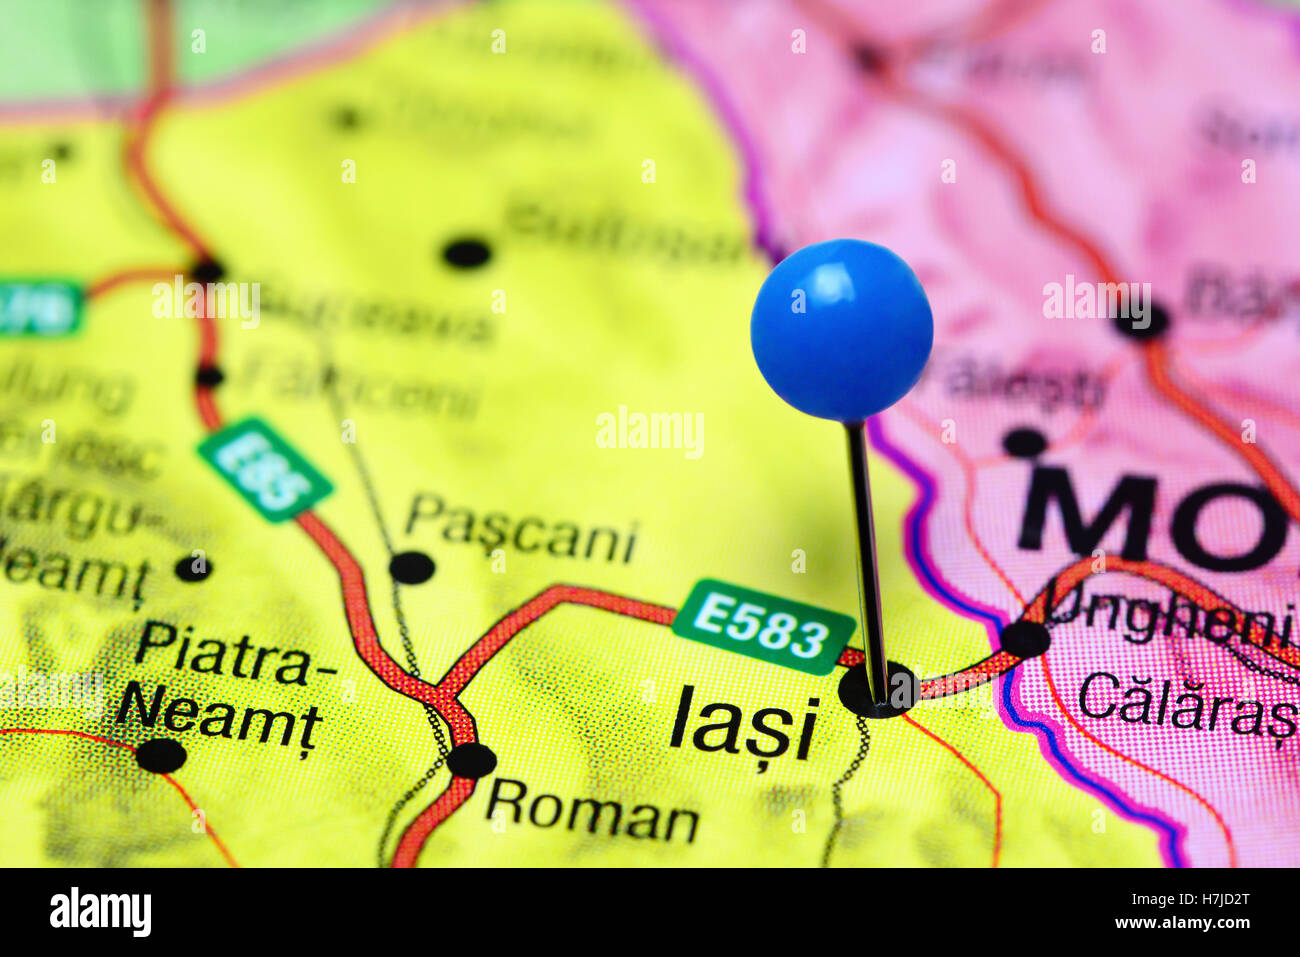 Iasi épinglée sur une carte de la Roumanie Banque D'Images